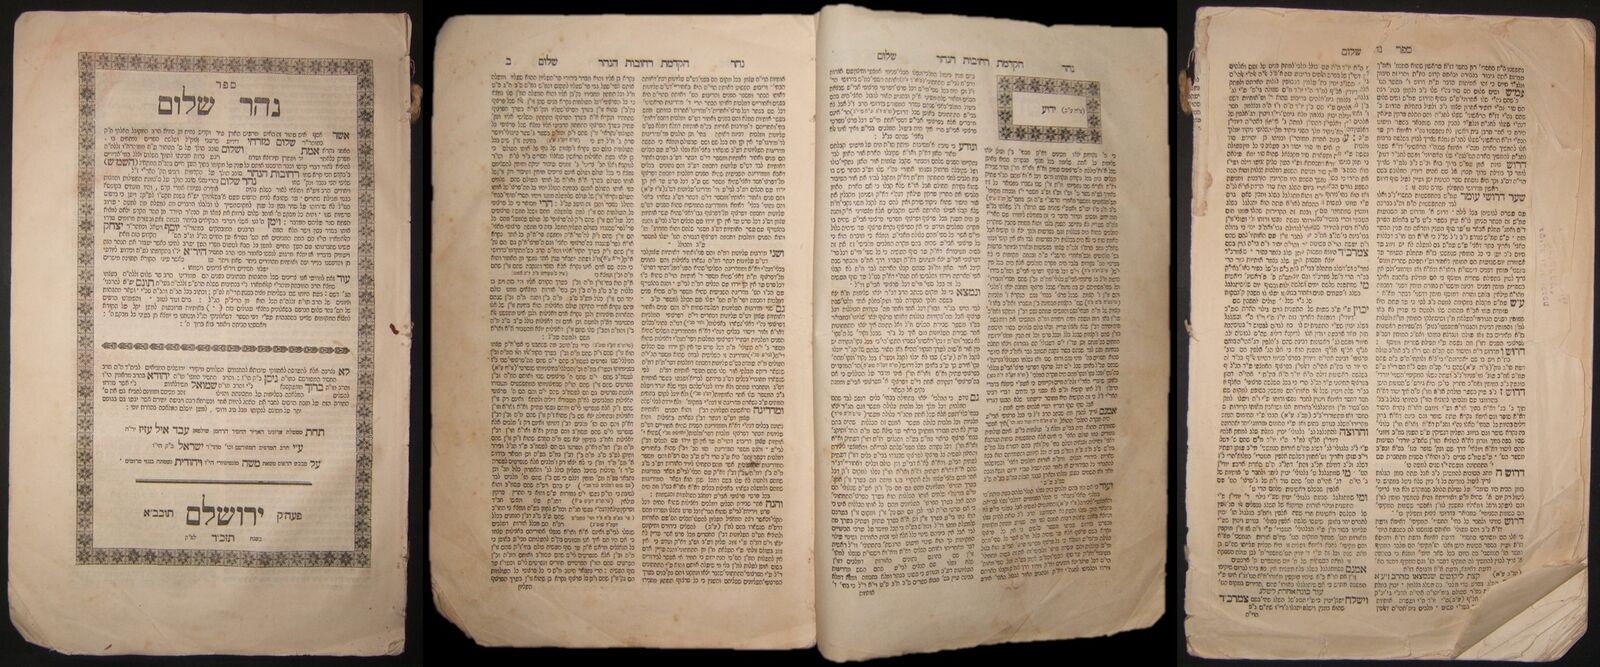 Responsa Sefer Nahar Shalom by Rabbi Sar Shalom Sharabi; Israel Bak printer 1867